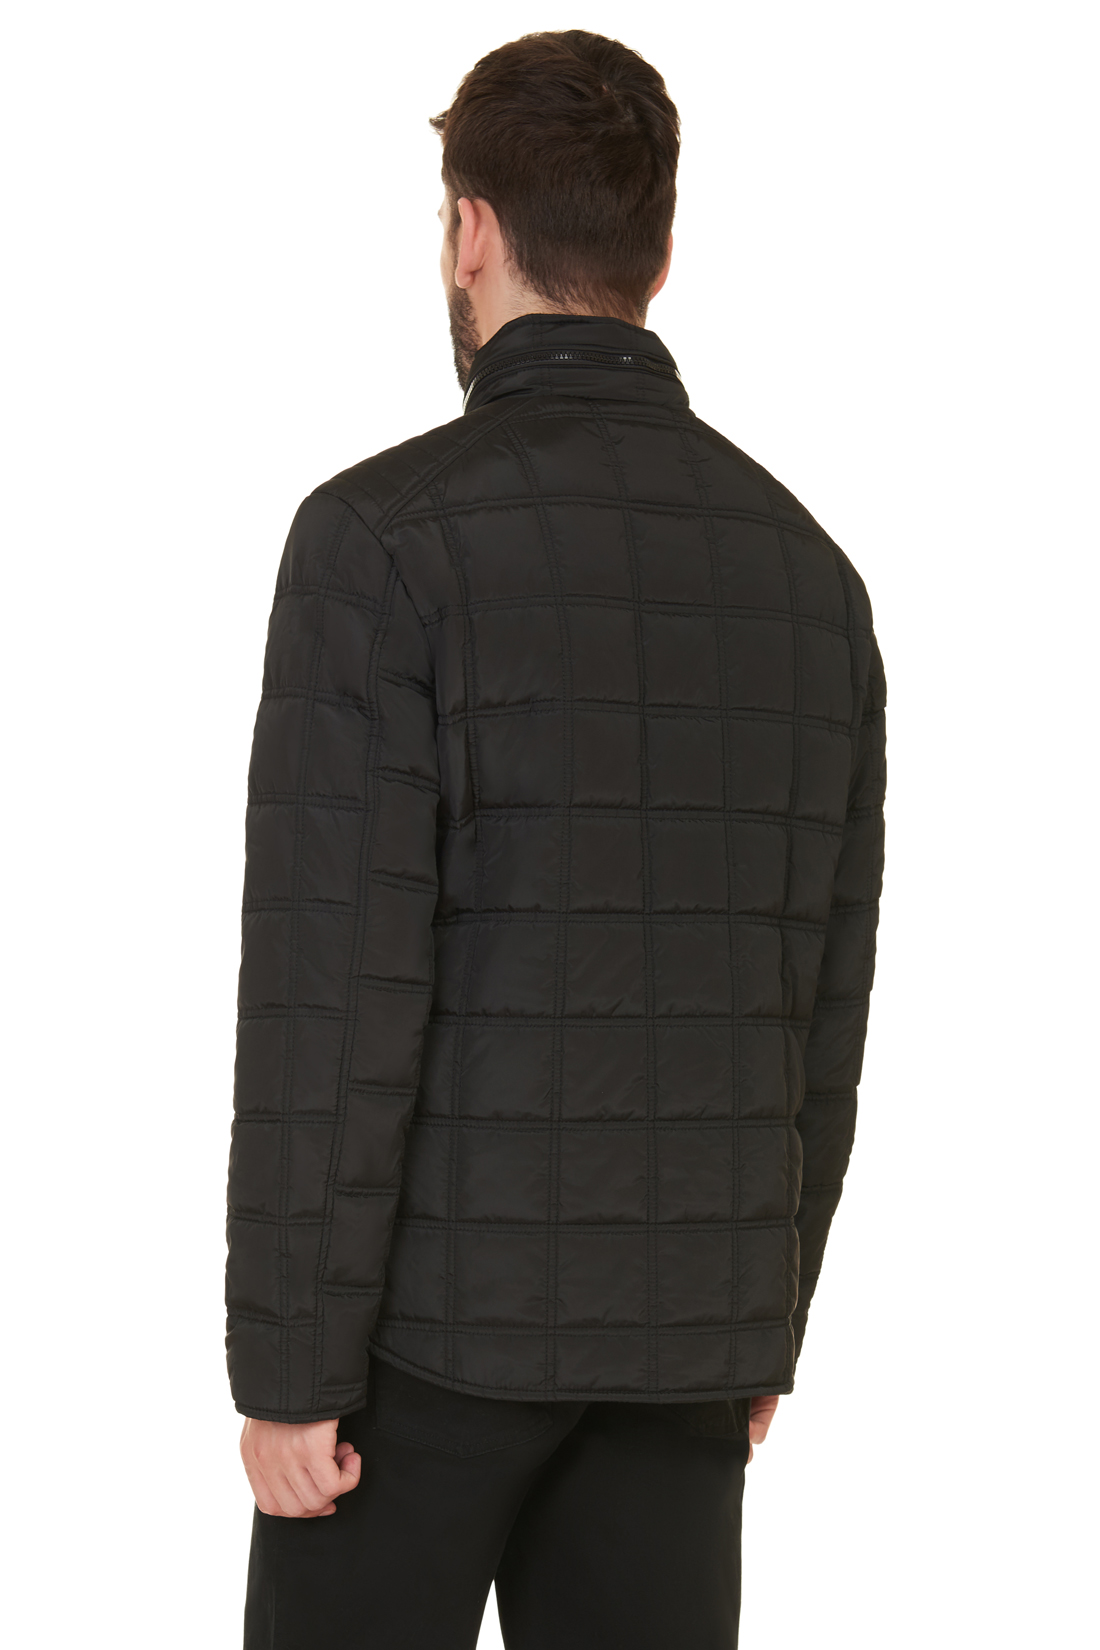 Куртка в байкерском стиле (арт. baon B537549), размер L, цвет черный Куртка в байкерском стиле (арт. baon B537549) - фото 2